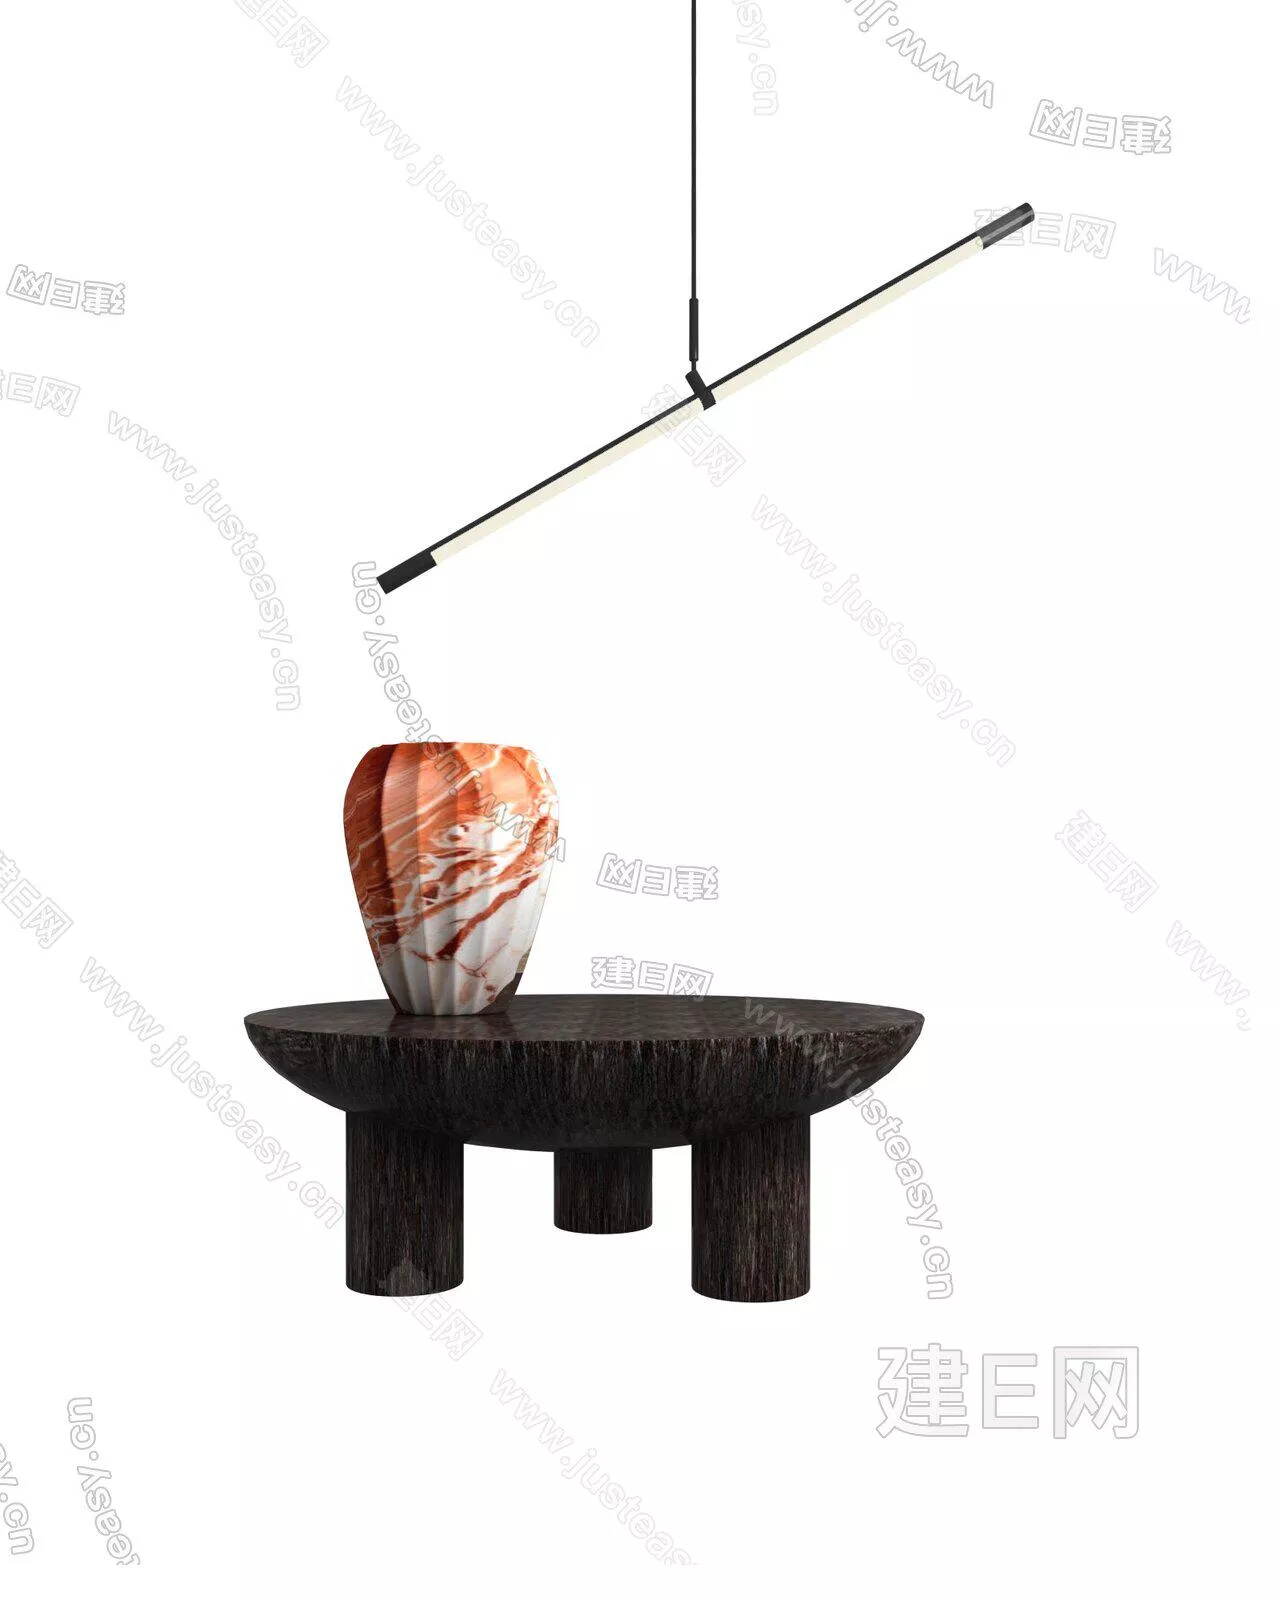 MODERN SIDE TABLE - SKETCHUP 3D MODEL - ENSCAPE - 103827623